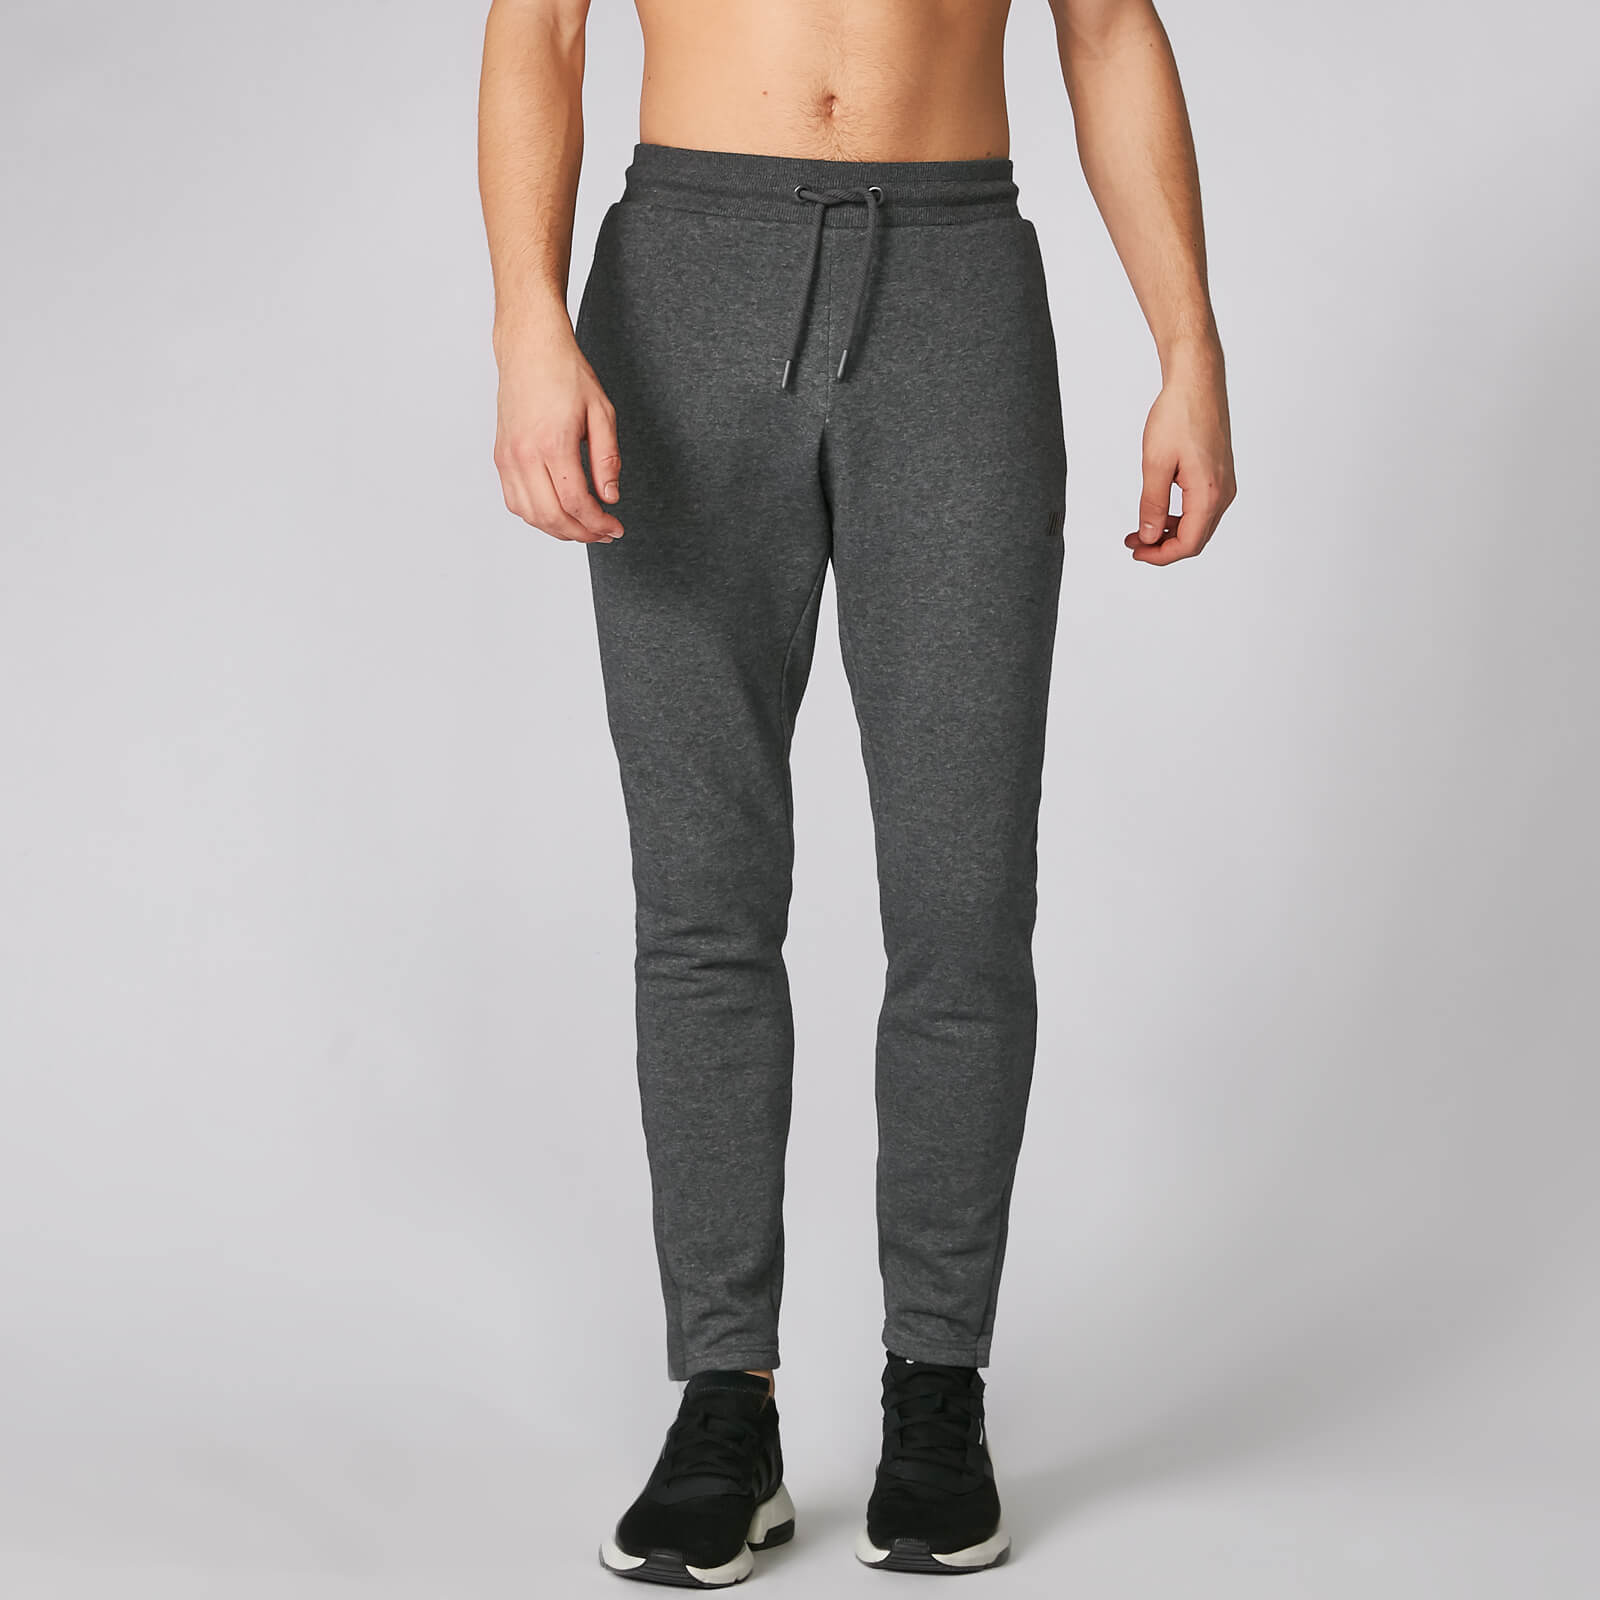 Tru-Fit joggers hlače 2.0 - Tamno sive - XS